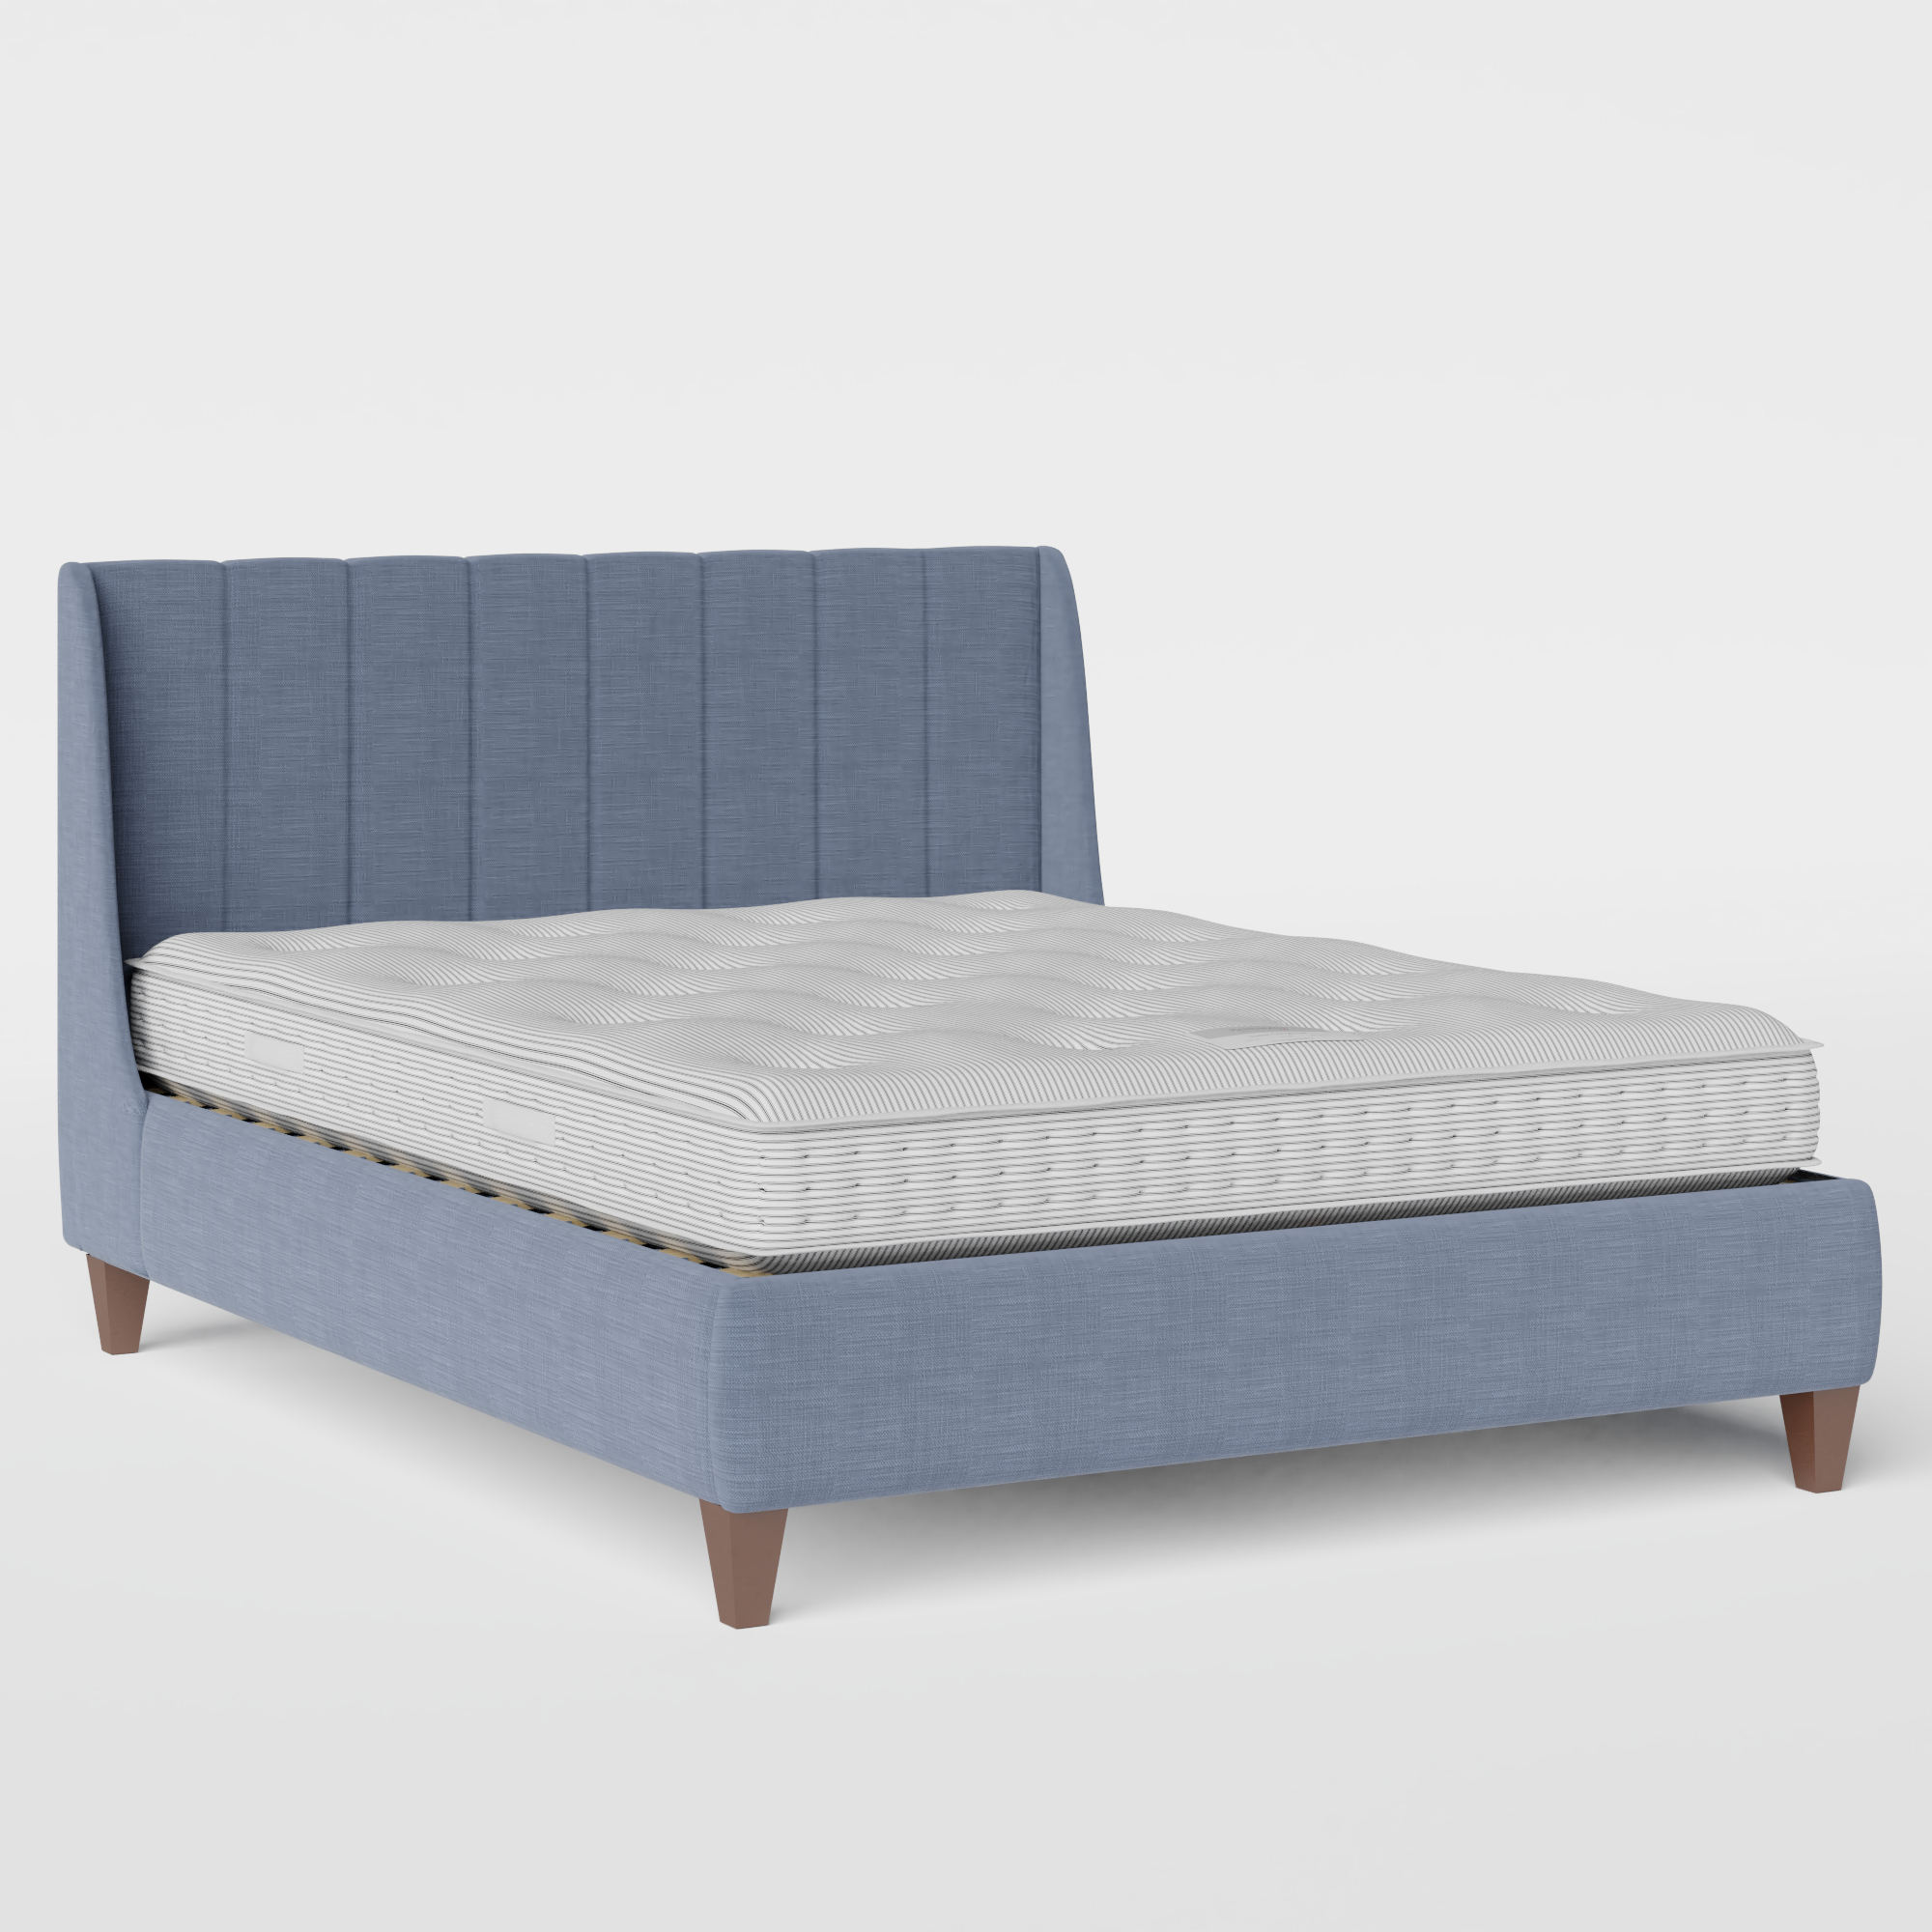 Sunderland Pleated cama tapizada en tela azul